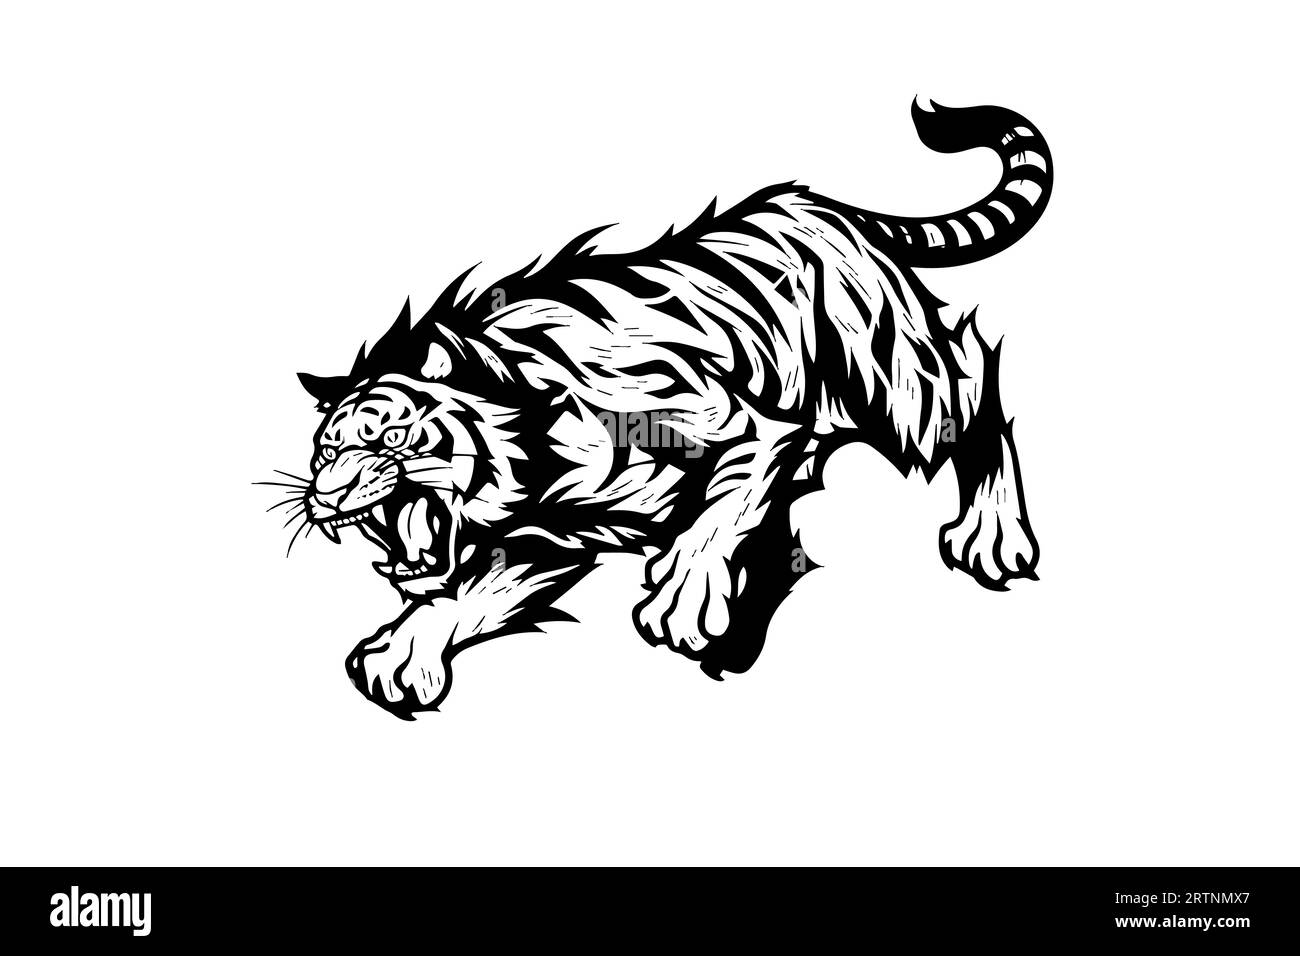 Conception de sport ou de tatouage de mascotte de tigre. Illustration vectorielle noir et blanc logo art signe. Illustration de Vecteur